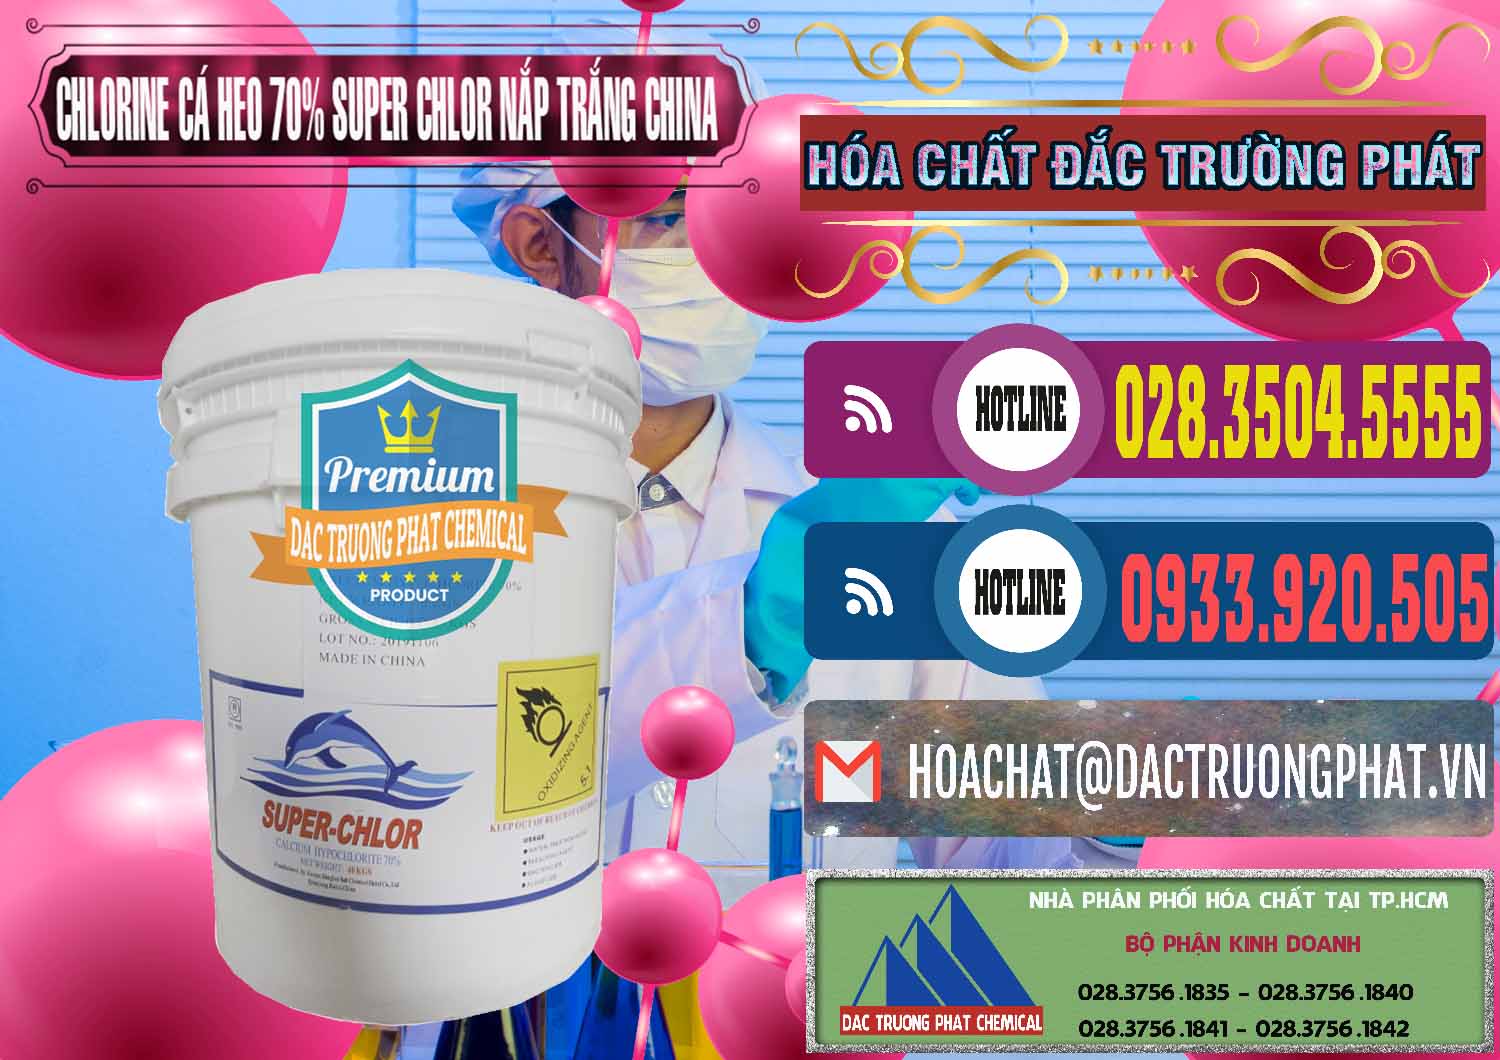 Công ty nhập khẩu _ bán Clorin - Chlorine Cá Heo 70% Super Chlor Nắp Trắng Trung Quốc China - 0240 - Công ty chuyên nhập khẩu ( cung cấp ) hóa chất tại TP.HCM - muabanhoachat.com.vn